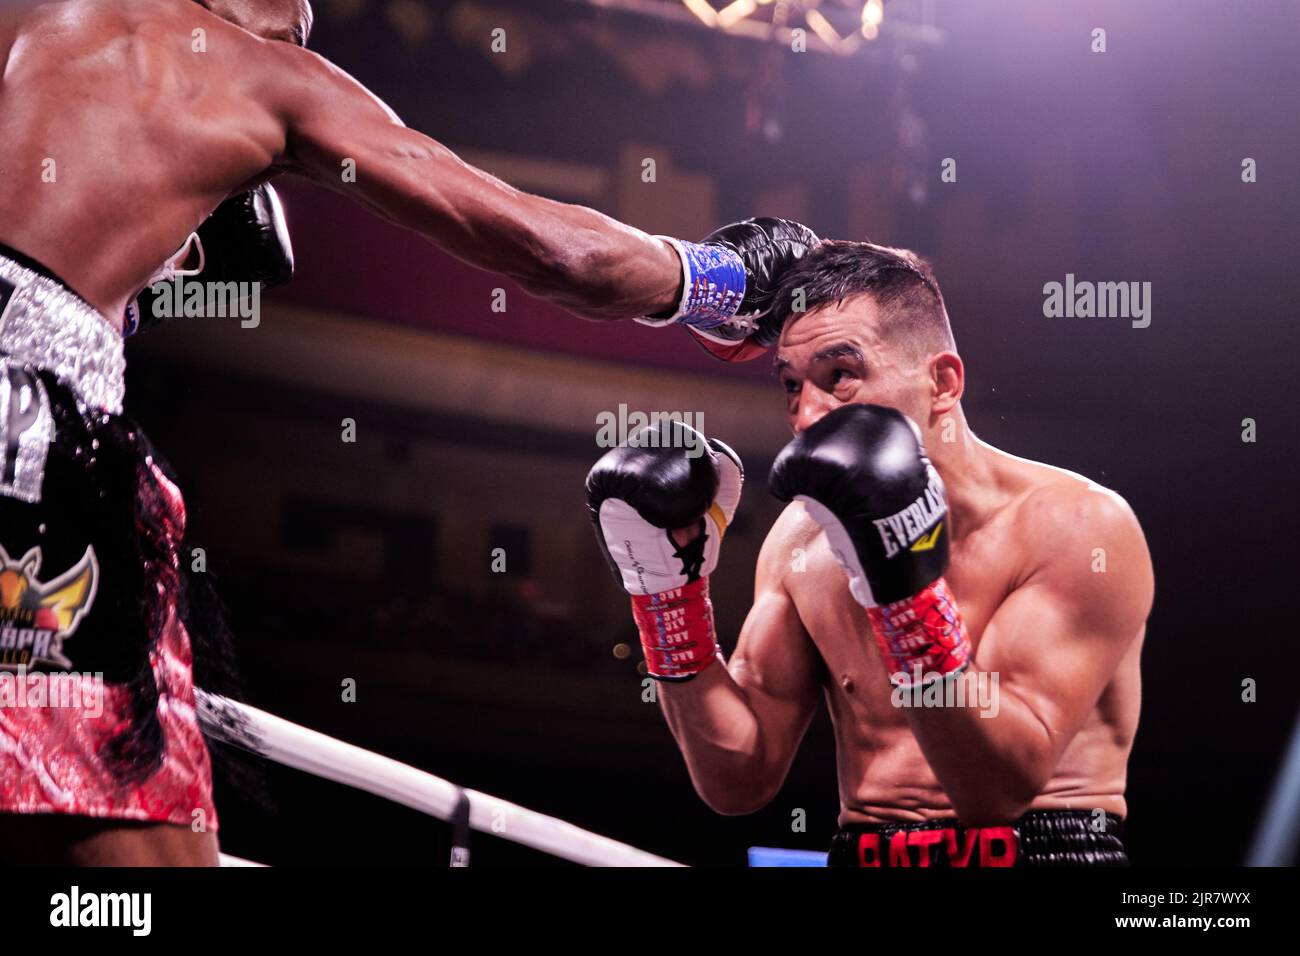 Pugile professionista WBA provvisorio super-leggero Alberto Puello sconfigge WBA Super-leggero Batyr Akhmedov in Professional Boxing match Foto Stock